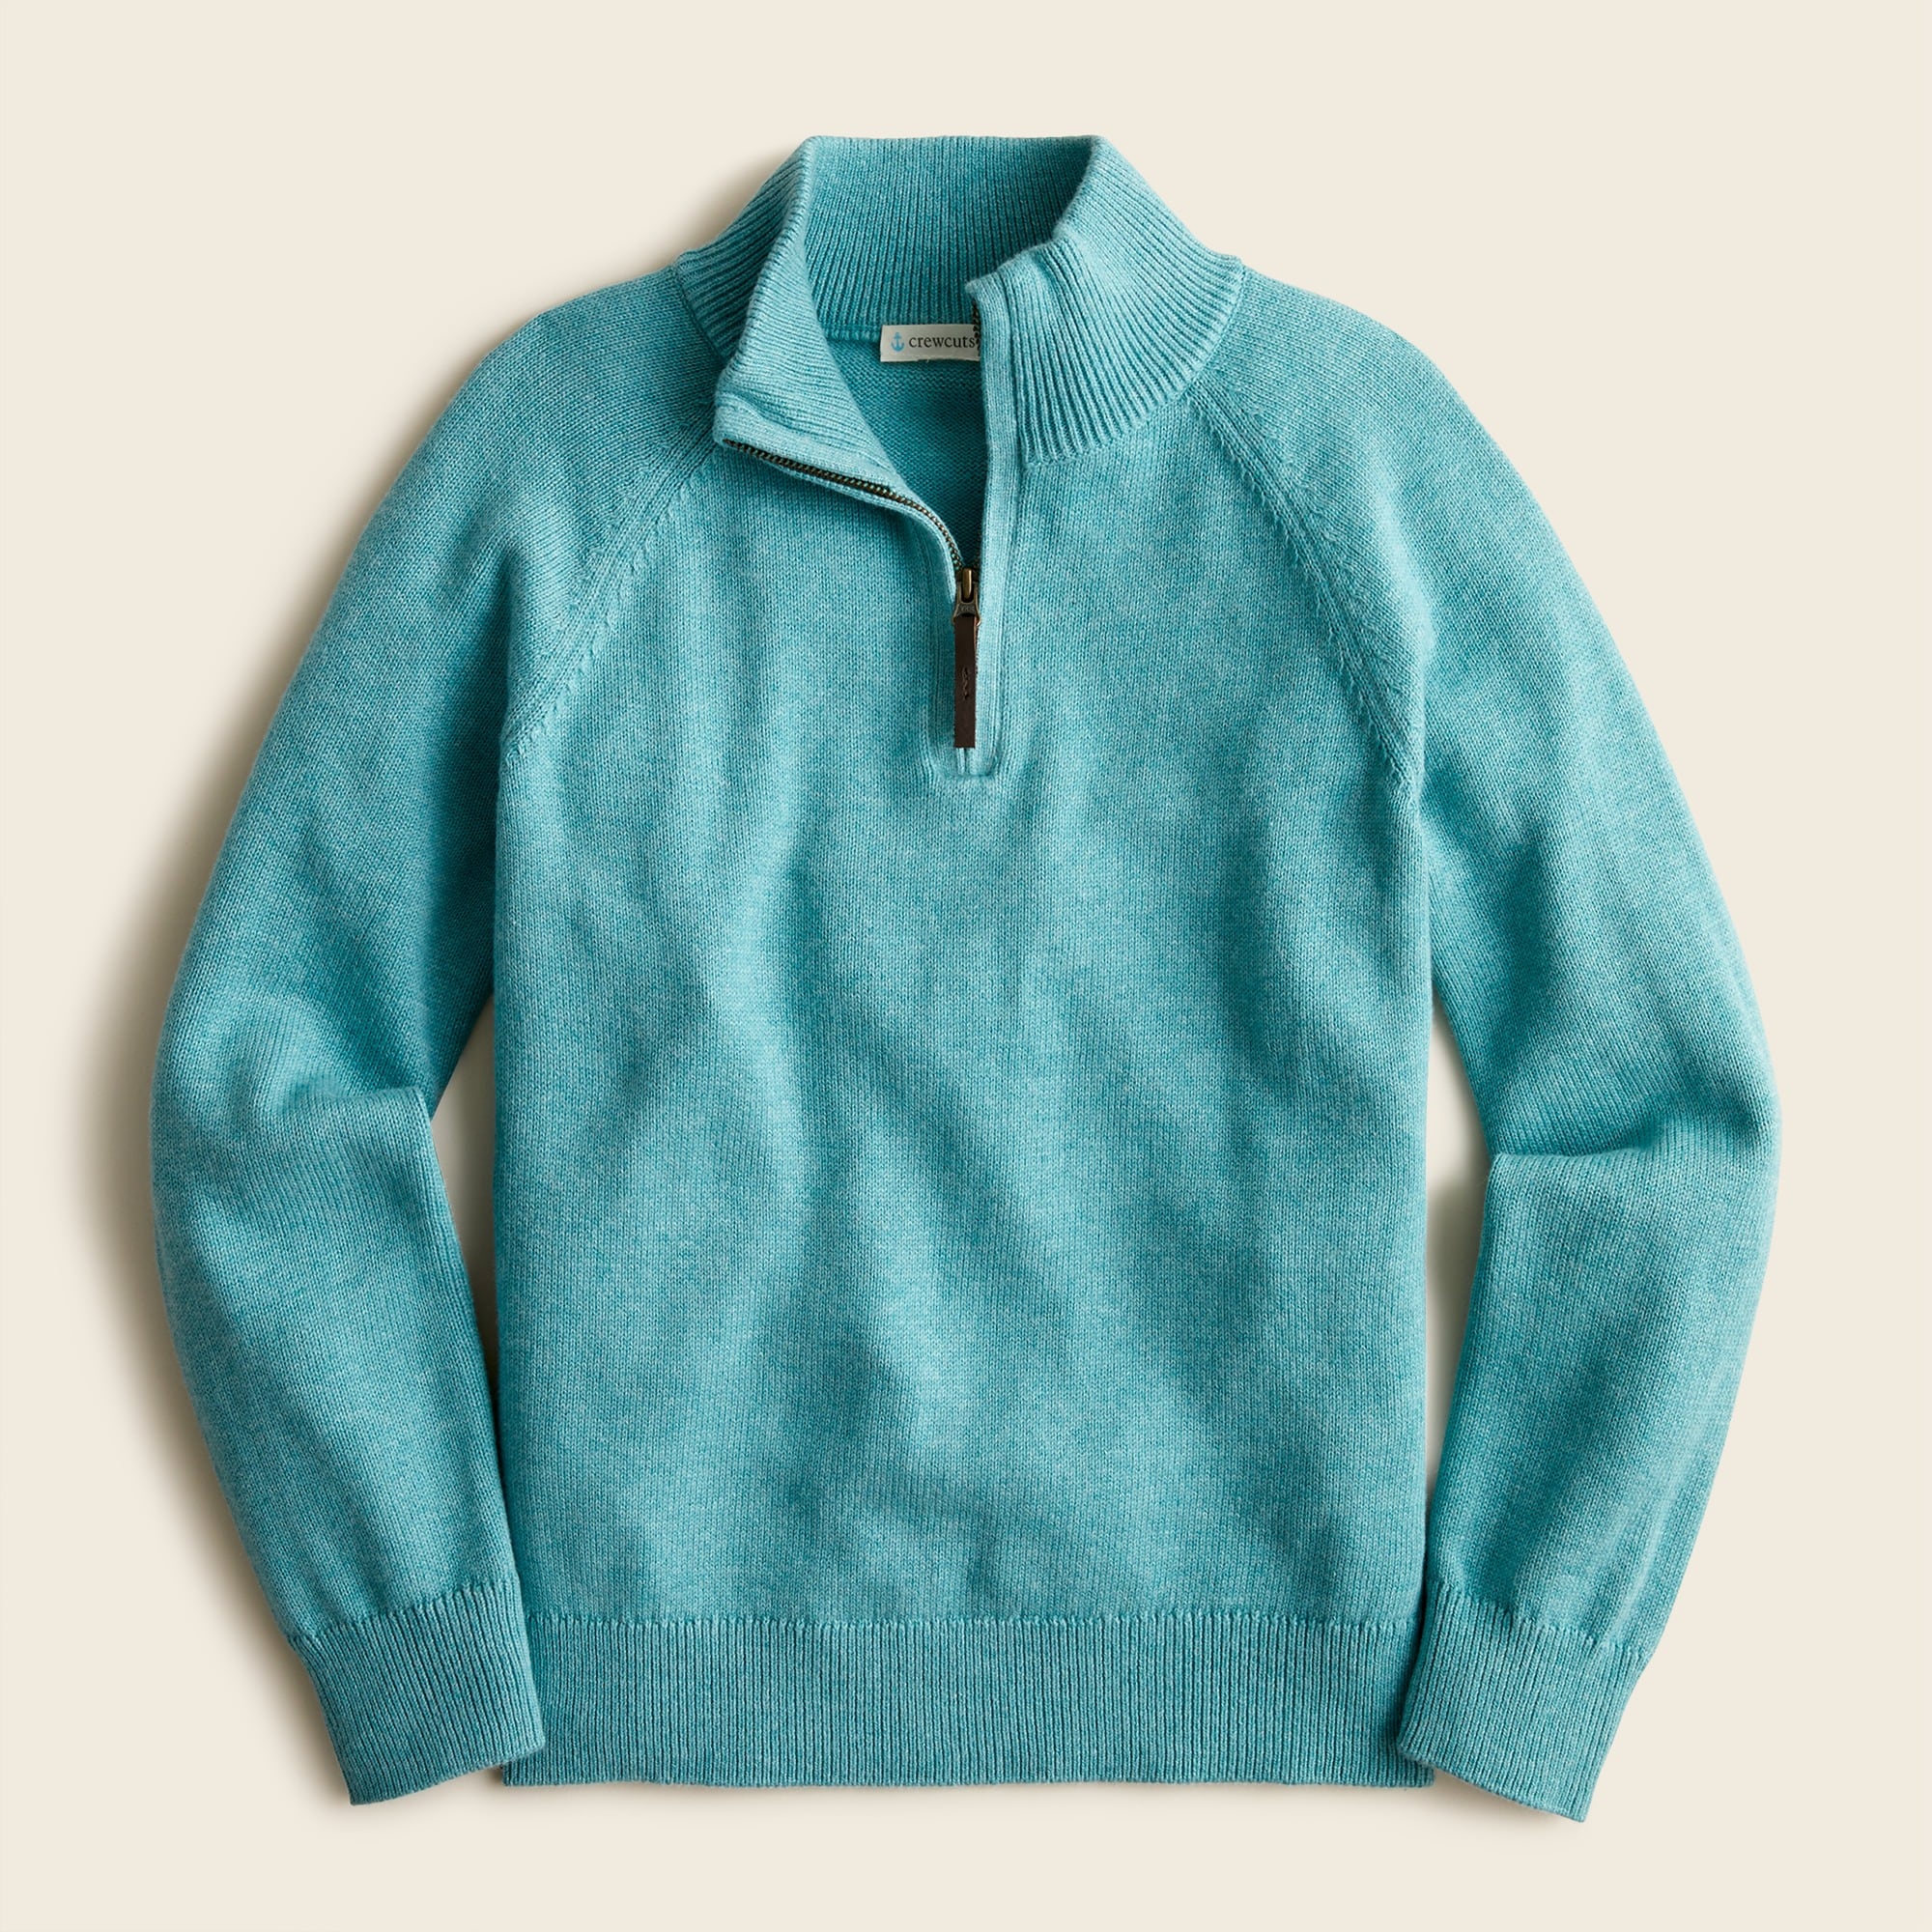 제이크루 보이즈 스웨터 J.crew Boys cotton-cashmere half-zip sweater,HTHR JADE